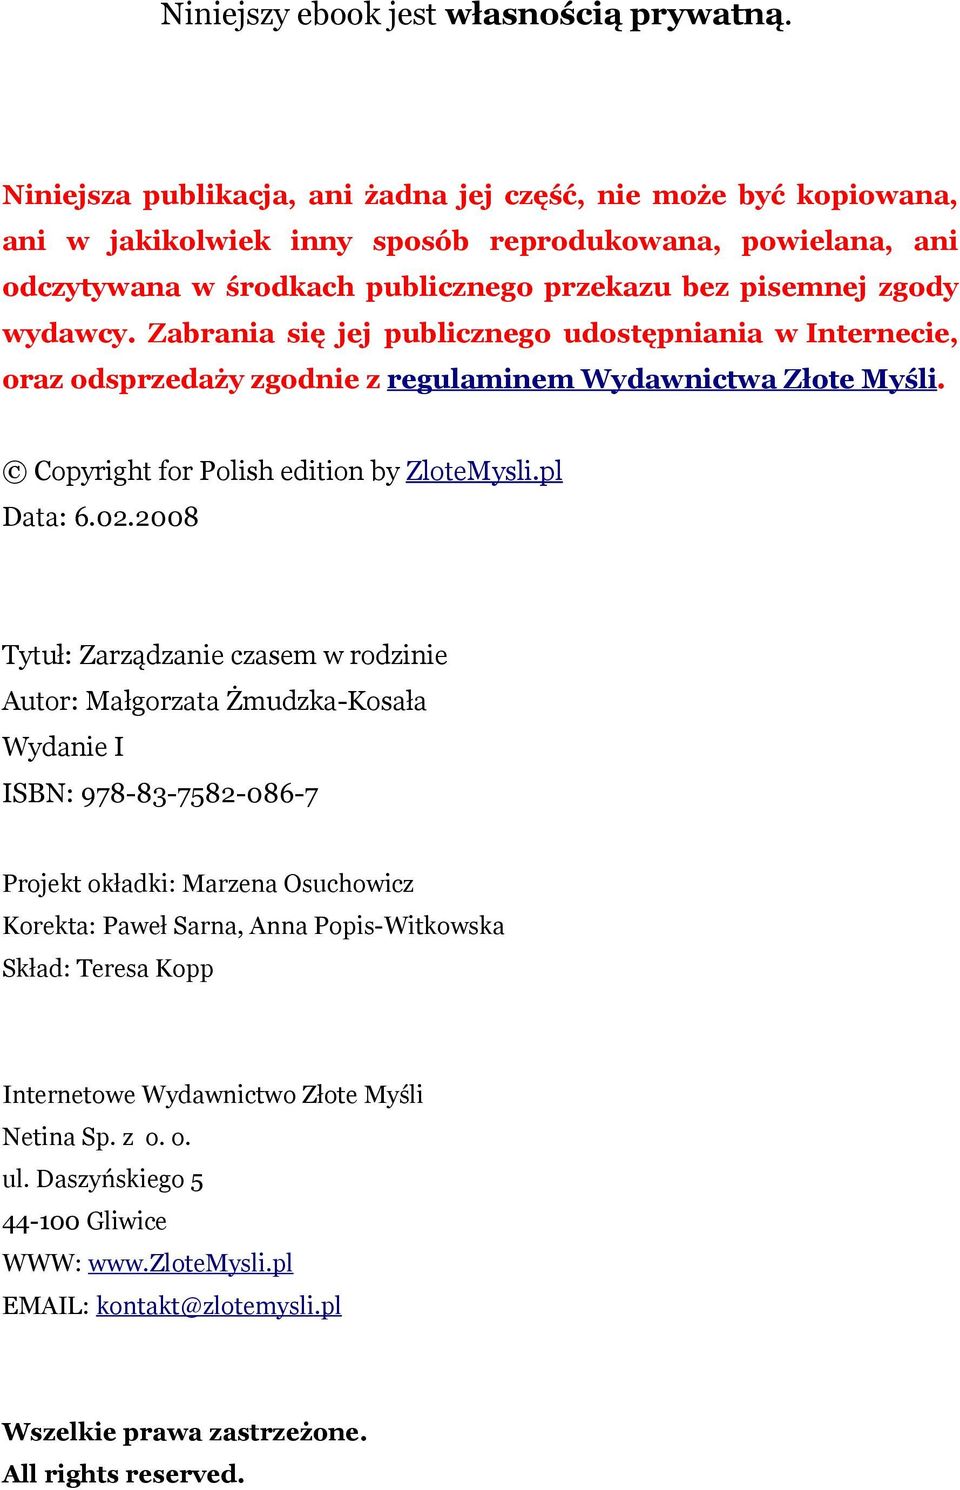 Zabrania się jej publicznego udostępniania w Internecie, oraz odsprzedaży zgodnie z regulaminem Wydawnictwa Złote Myśli. Copyright for Polish edition by ZloteMysli.pl Data: 6.02.